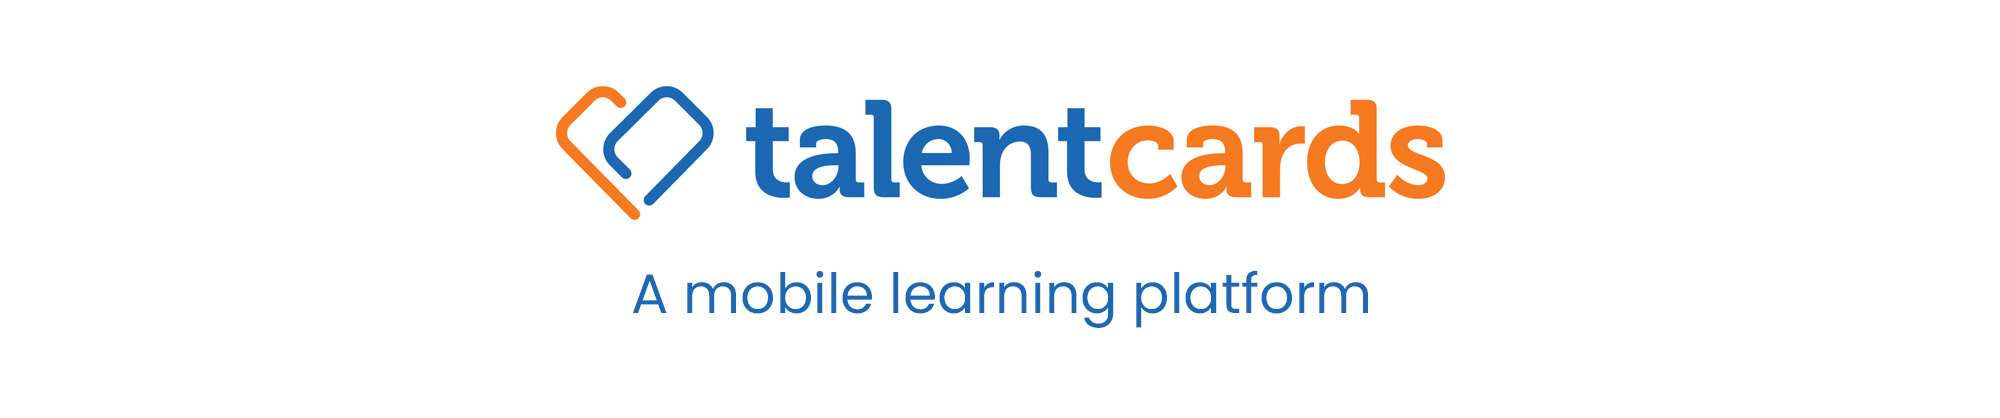 TalentCards - A mobile learning platform